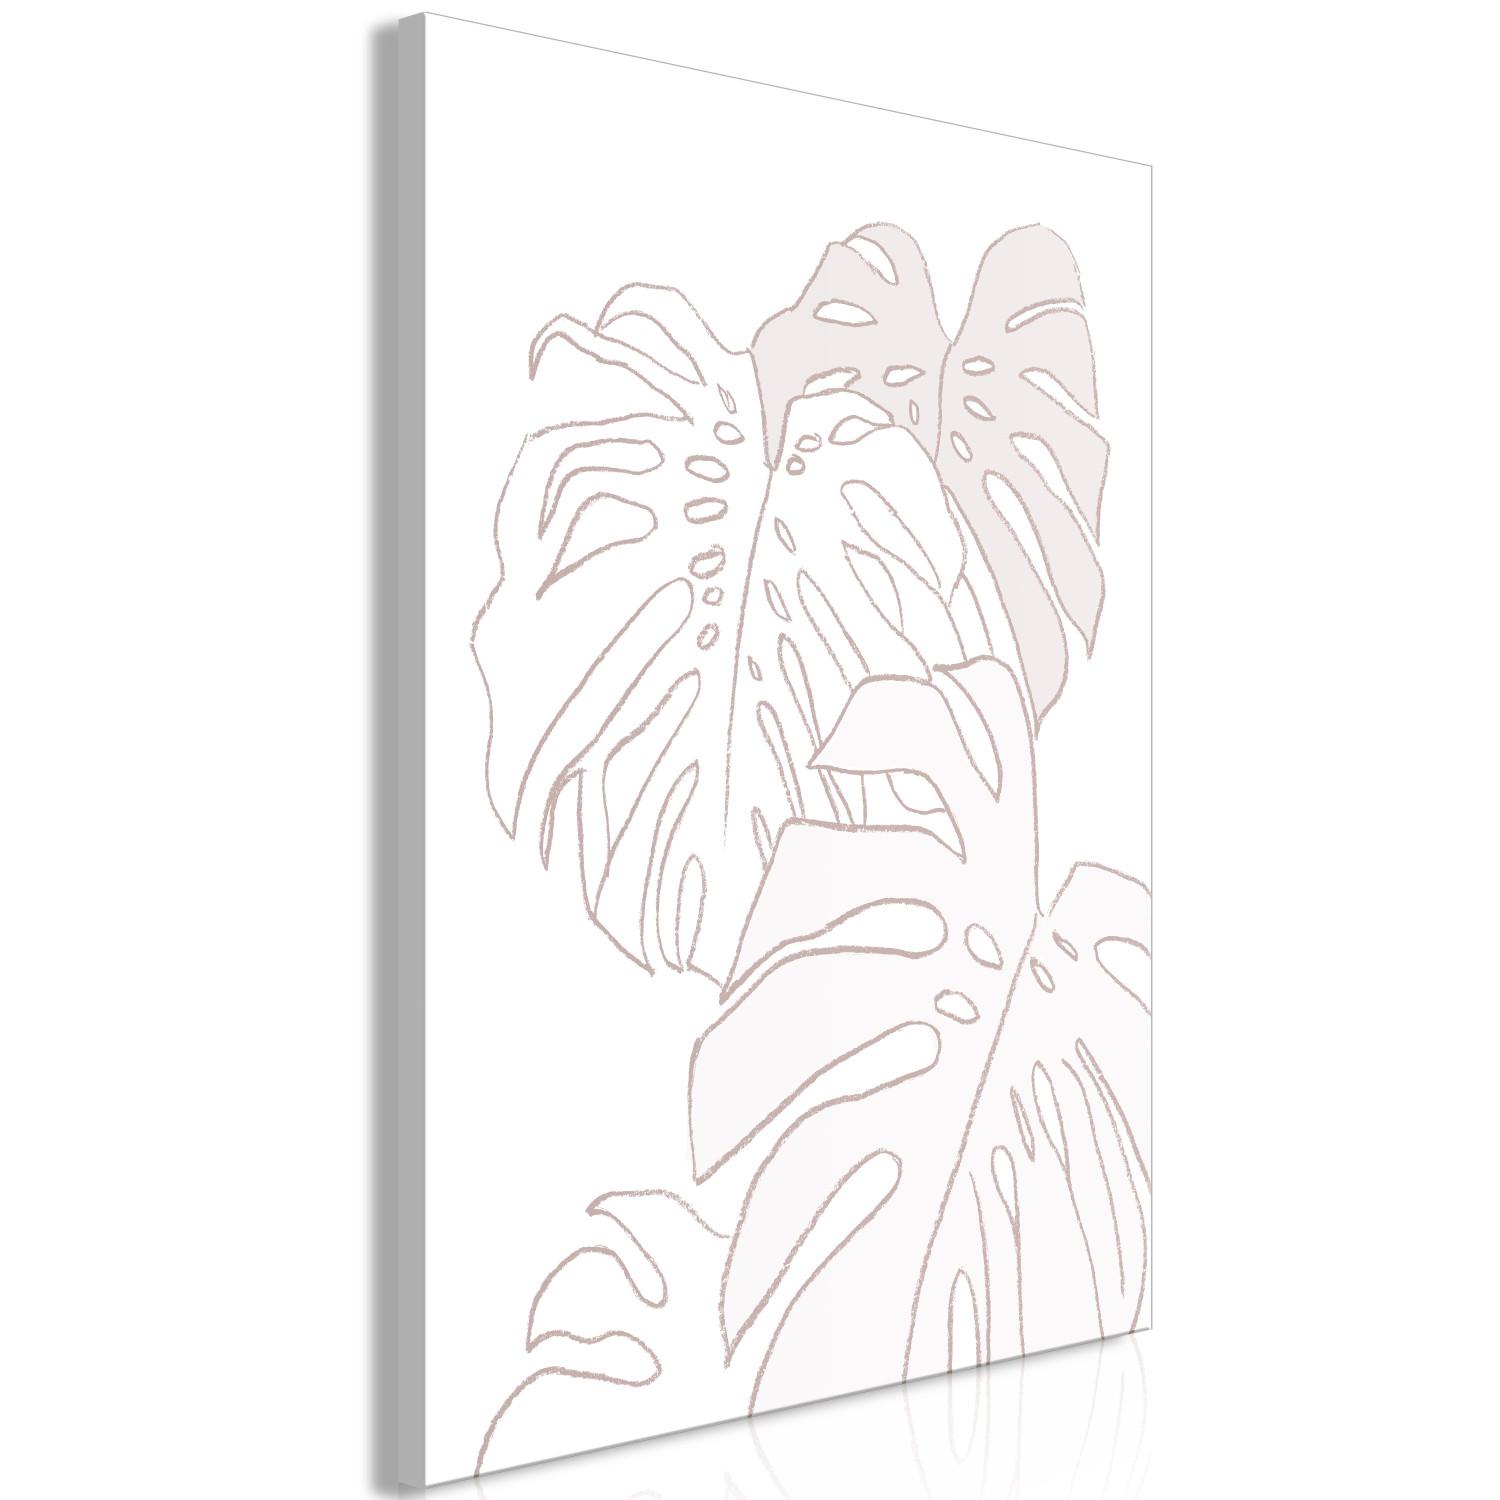 Cuadro moderno Estudio de Monstera - un boceto lineal de las hojas de la planta